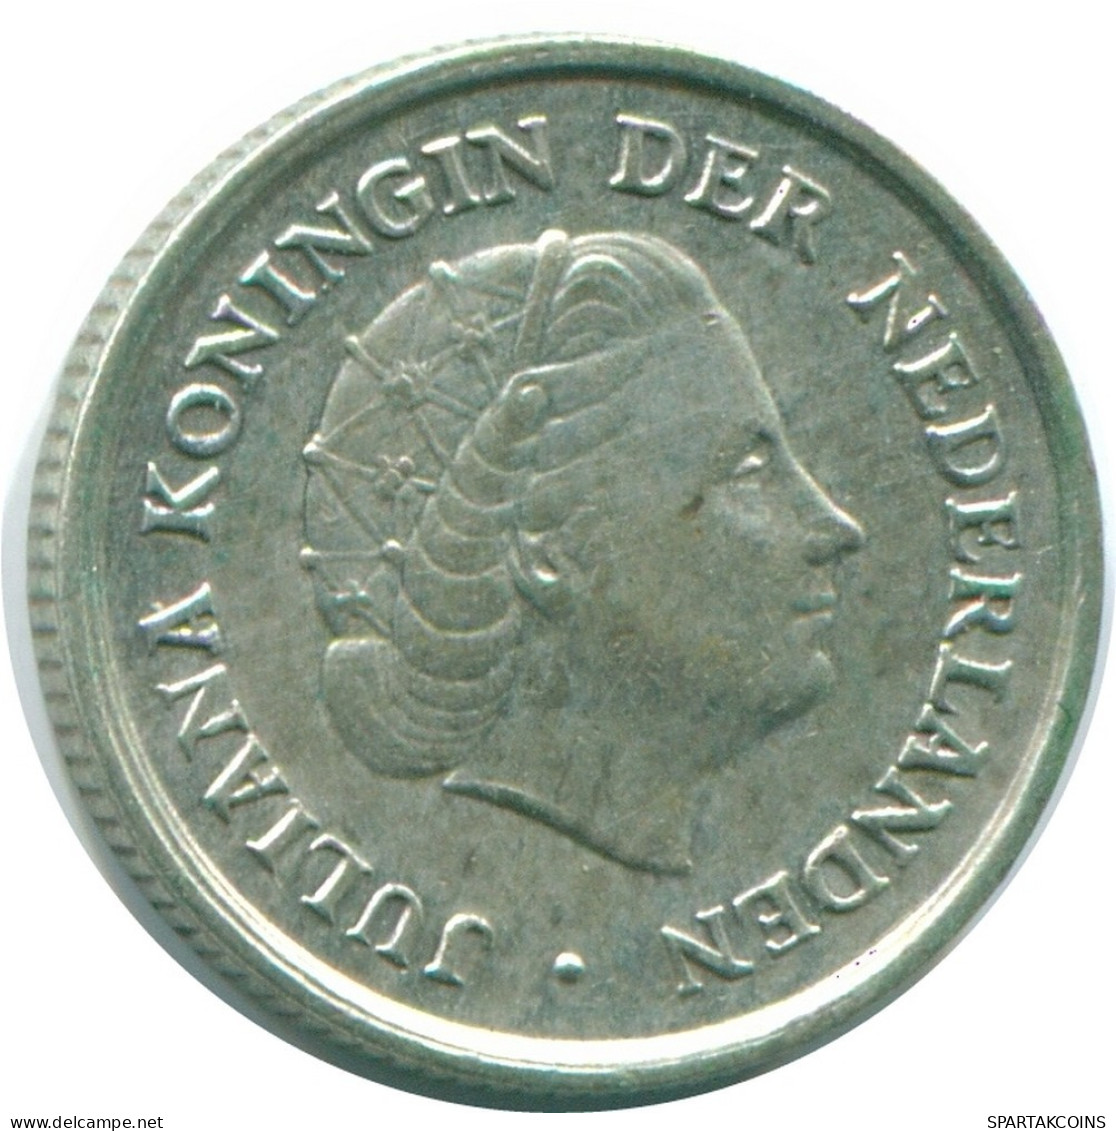 1/10 GULDEN 1966 NIEDERLÄNDISCHE ANTILLEN SILBER Koloniale Münze #NL12678.3.D.A - Niederländische Antillen